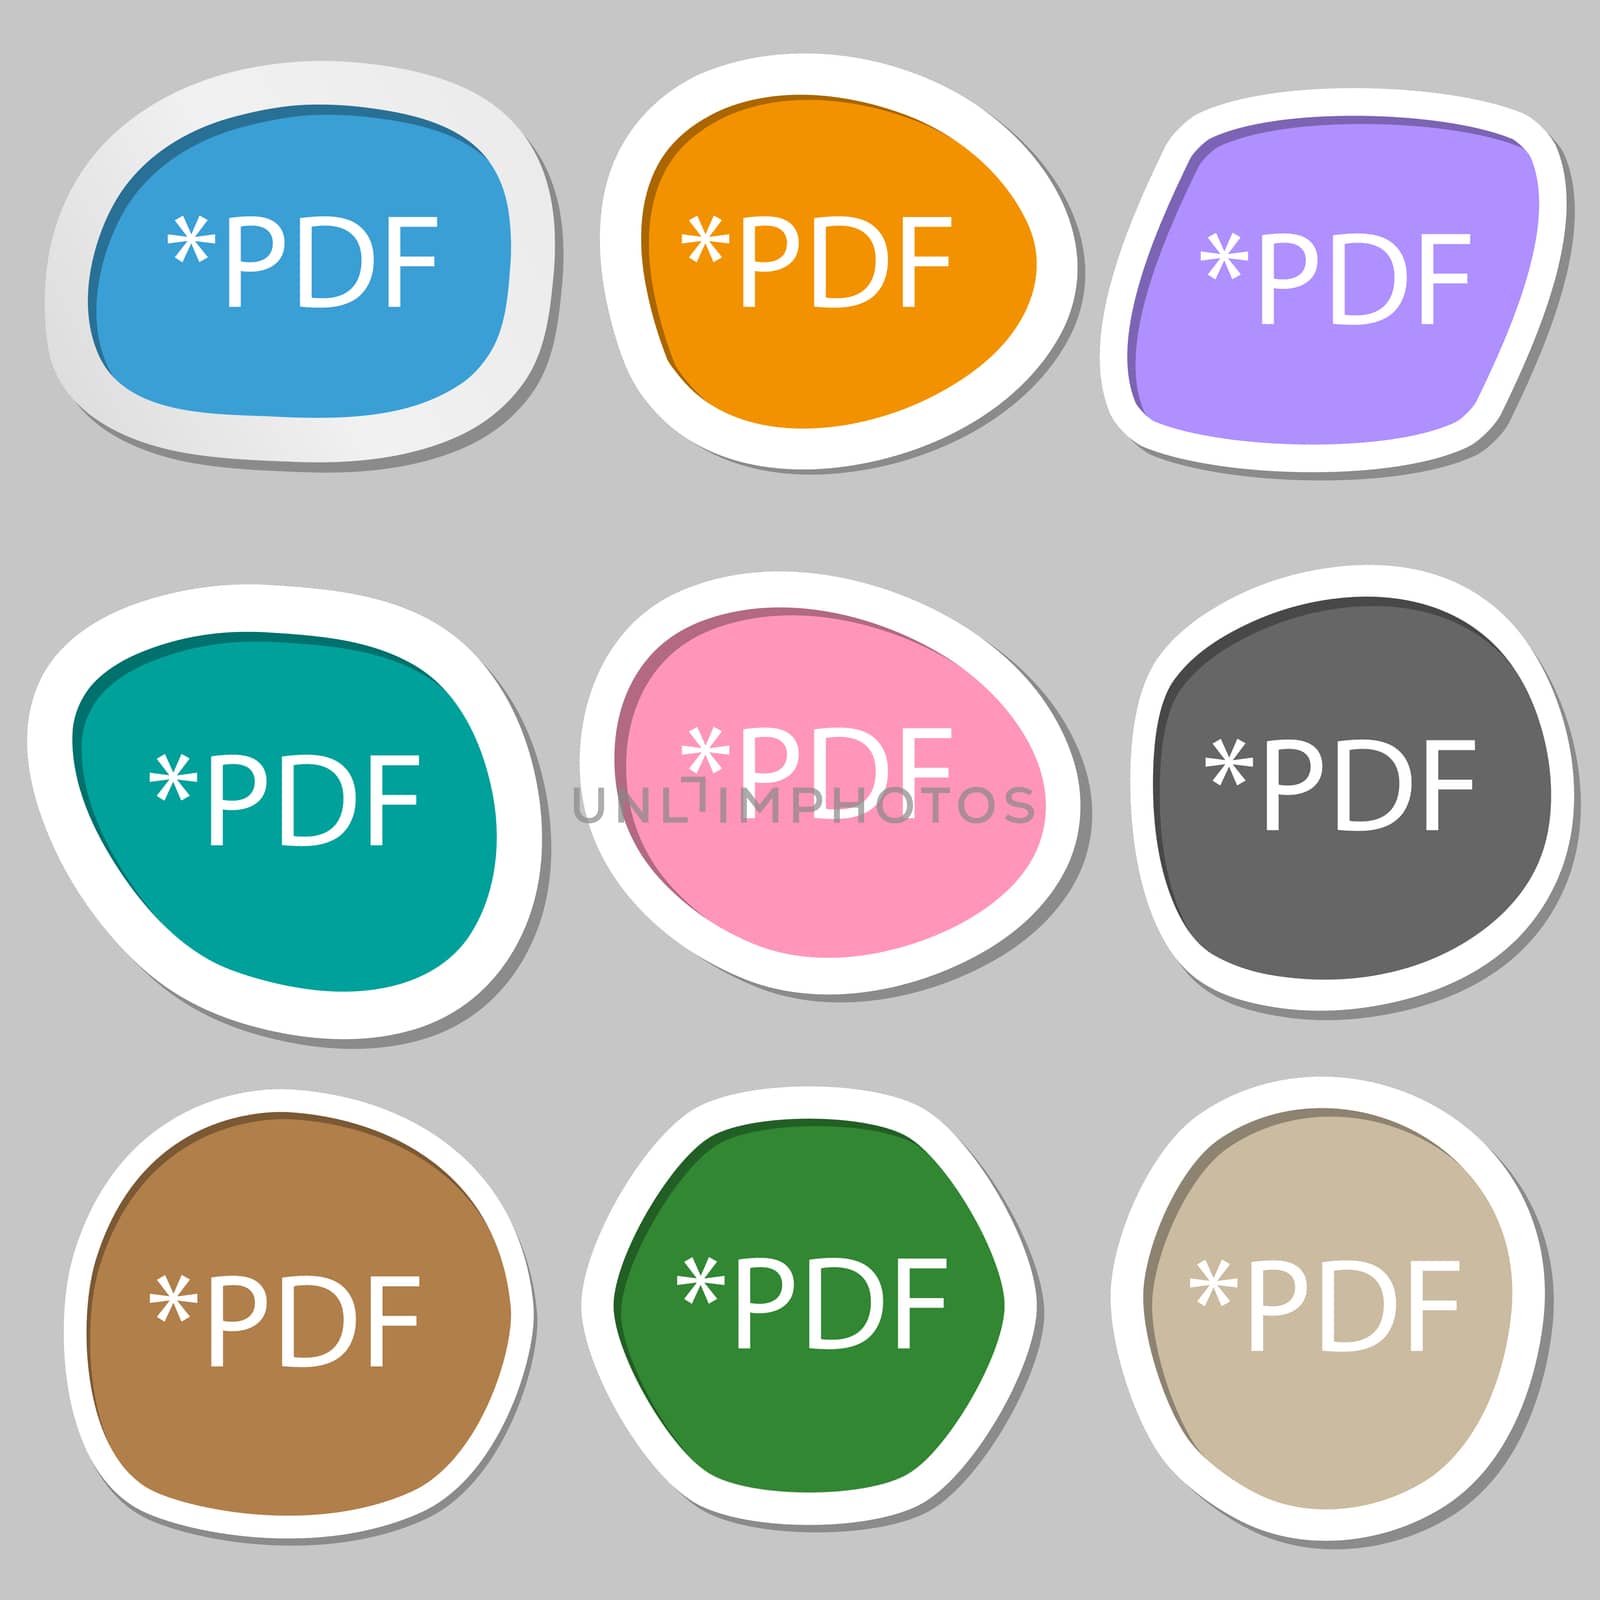 PDF file document icon. Download pdf button. PDF file extension symbol. Multicolored paper stickers. illustration